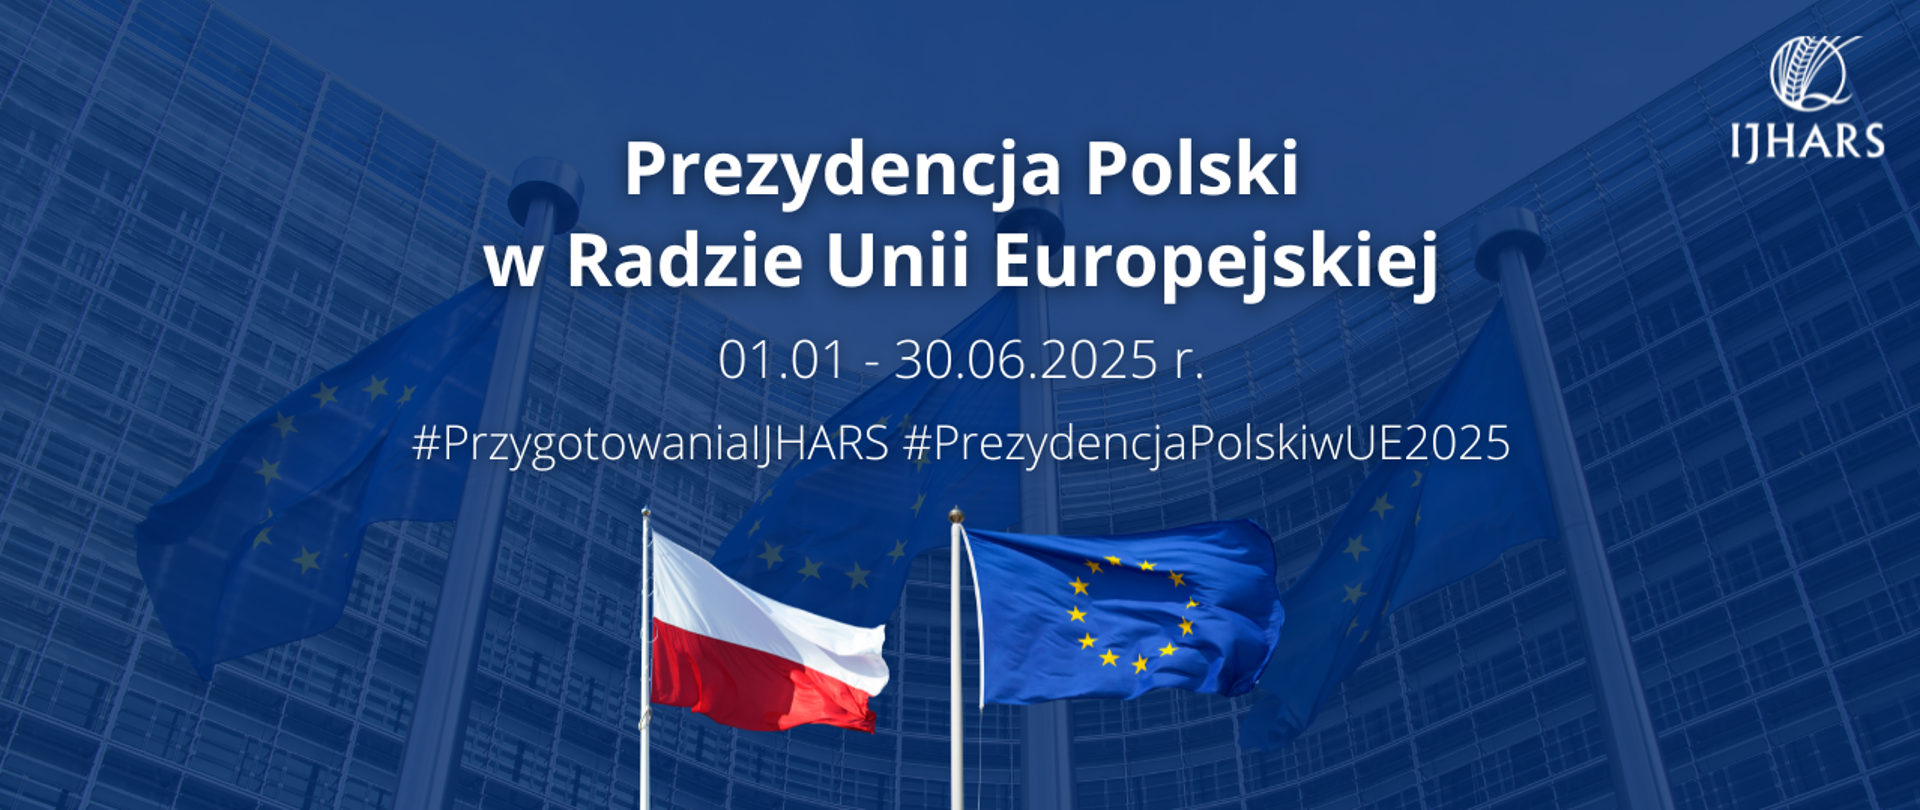 Napisy: Prezydencja Polski w Radzie Unii Europejskiej 01.01. - 30.06.2025 r. Przygotowania IJHARS, dwie flagi - polska i unijna na tle budynku UE